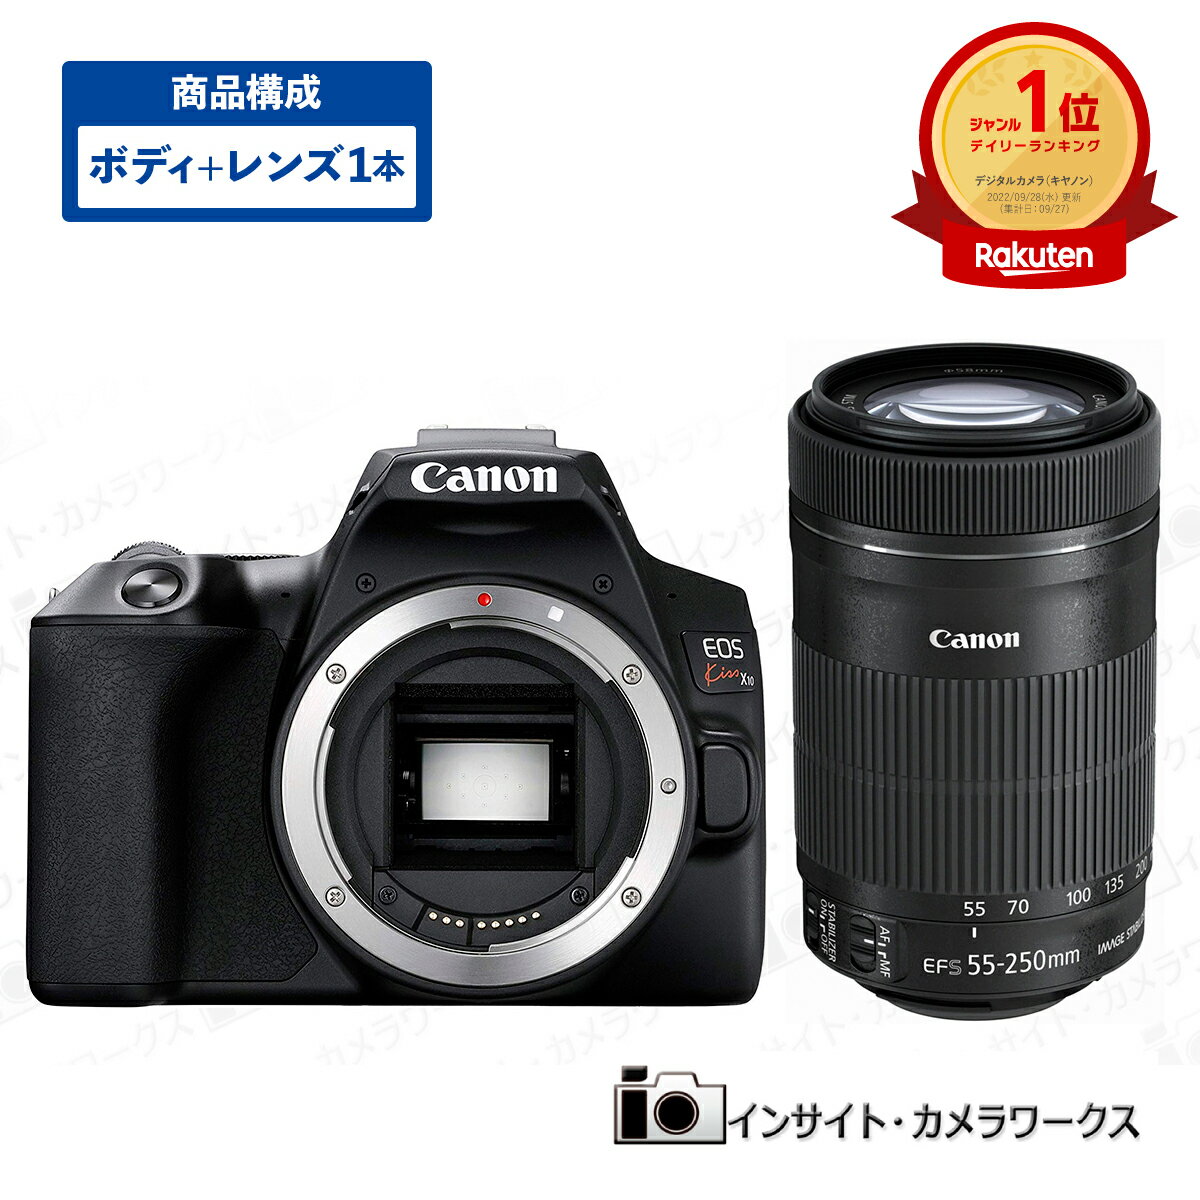 キヤノン EOS Kiss X10 ボディ ブラック 望遠ズームレンズセット EF-S55-250mm F4-5.6 IS STM デジタル一眼レフカメラ イオス Canon